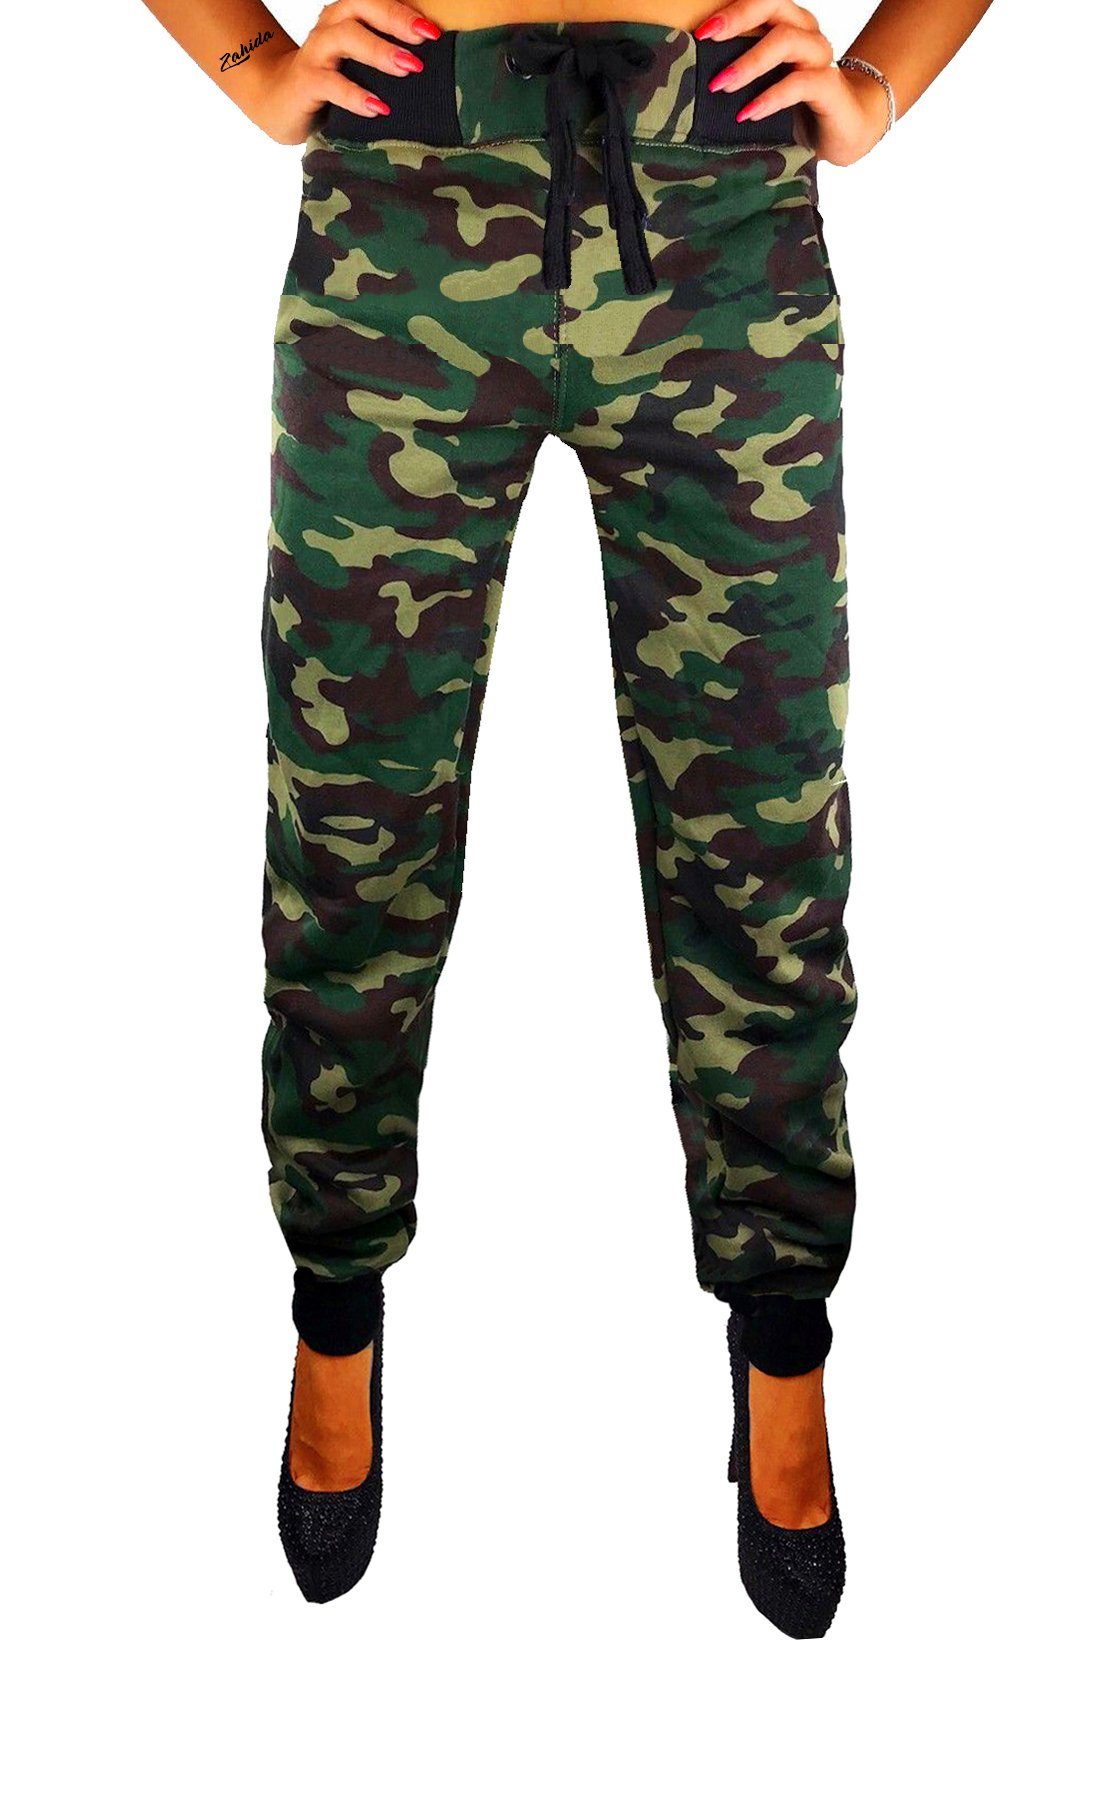 Trainingshose Sporthose elastischer Damen Sweatpants RMK Camouflage Camouflage-Grün Jogginghose Bund Fitnesshose